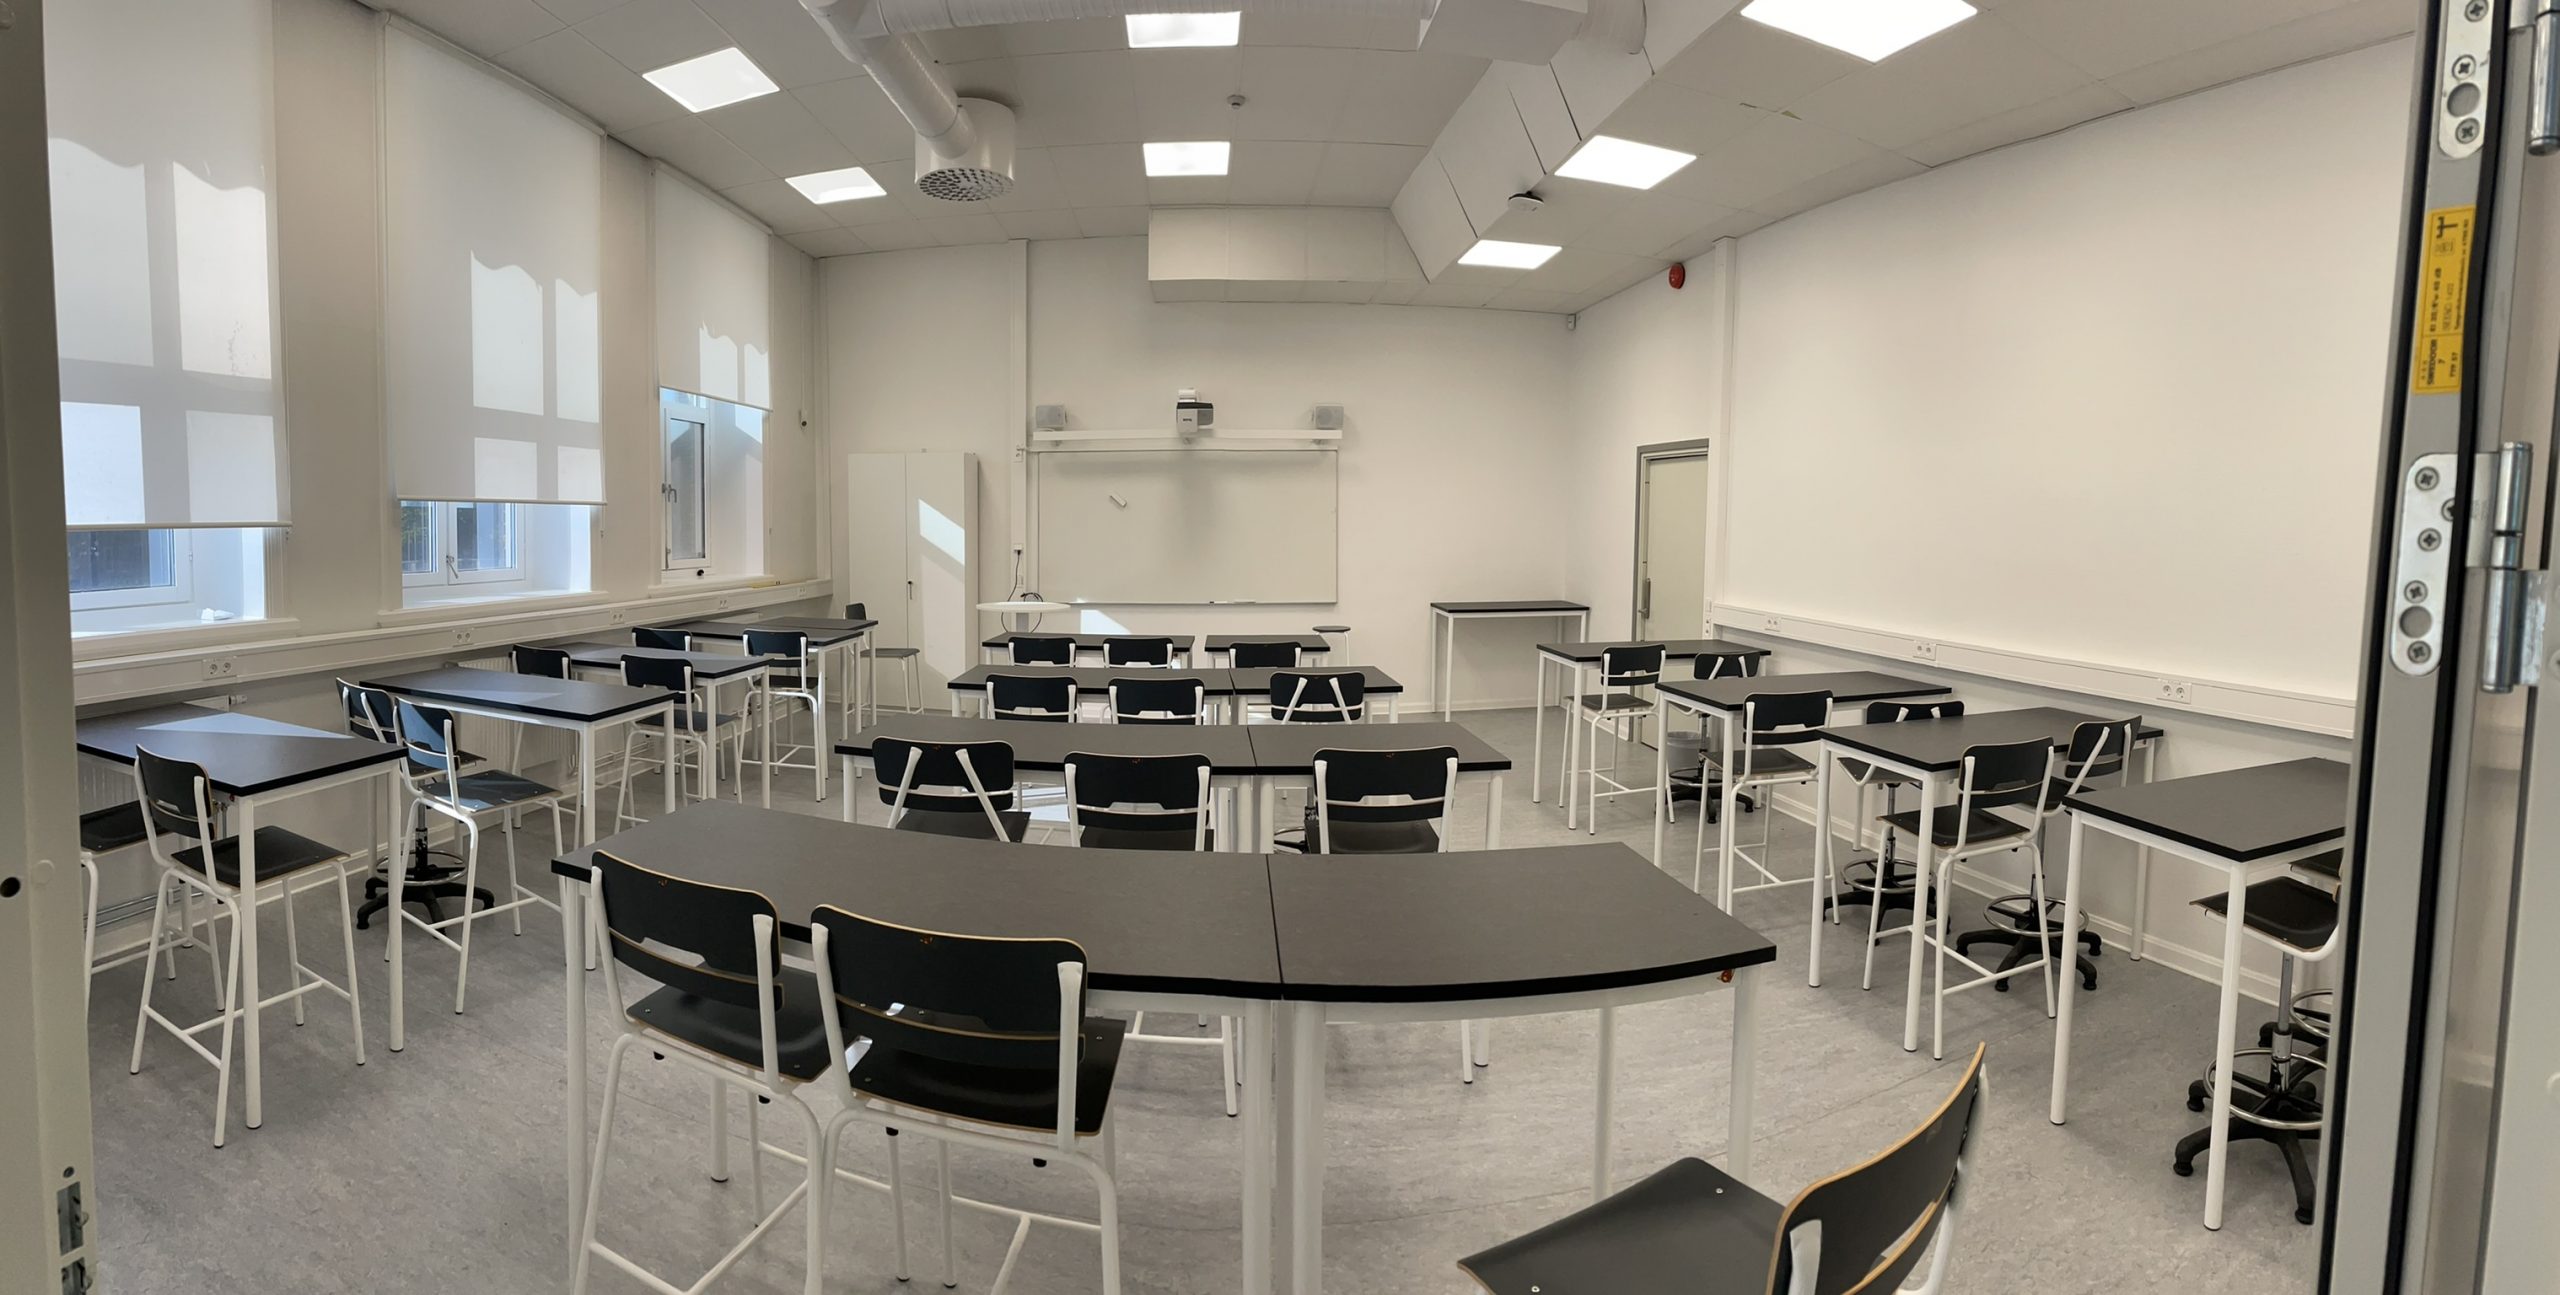 Nytt klassrum på Öresundsgymnasiet med svarta bord och stolar